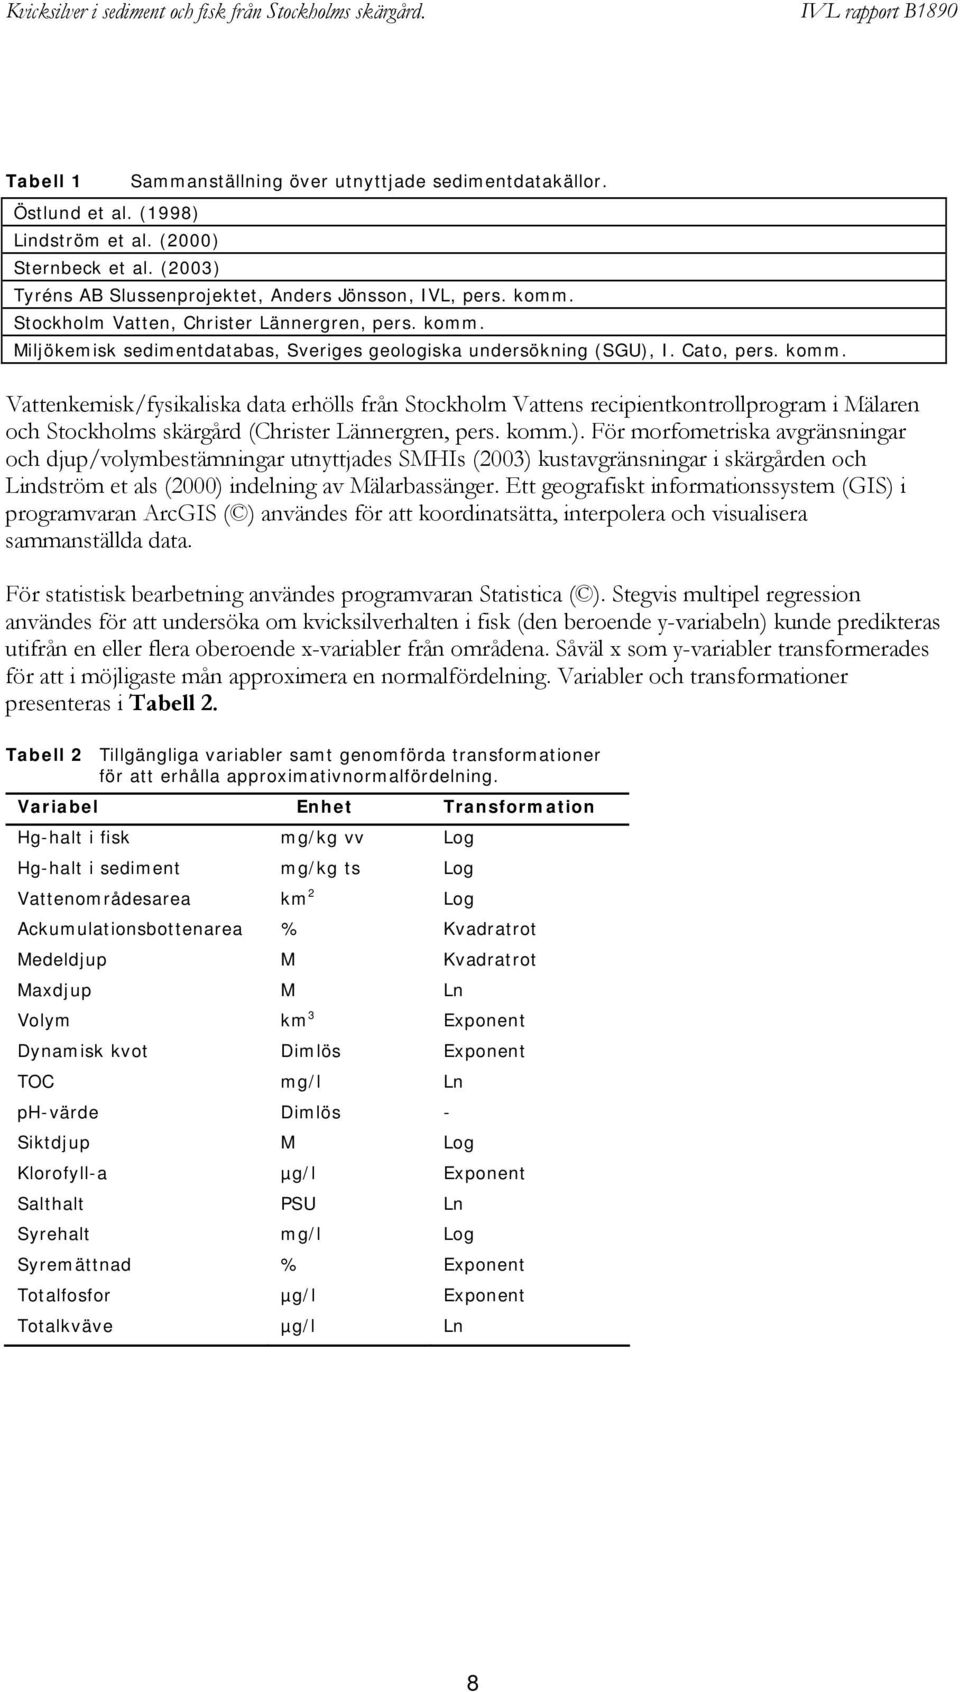 komm.). För morfometriska avgränsningar och djup/volymbestämningar utnyttjades SMHIs (2003) kustavgränsningar i skärgården och Lindström et als (2000) indelning av Mälarbassänger.